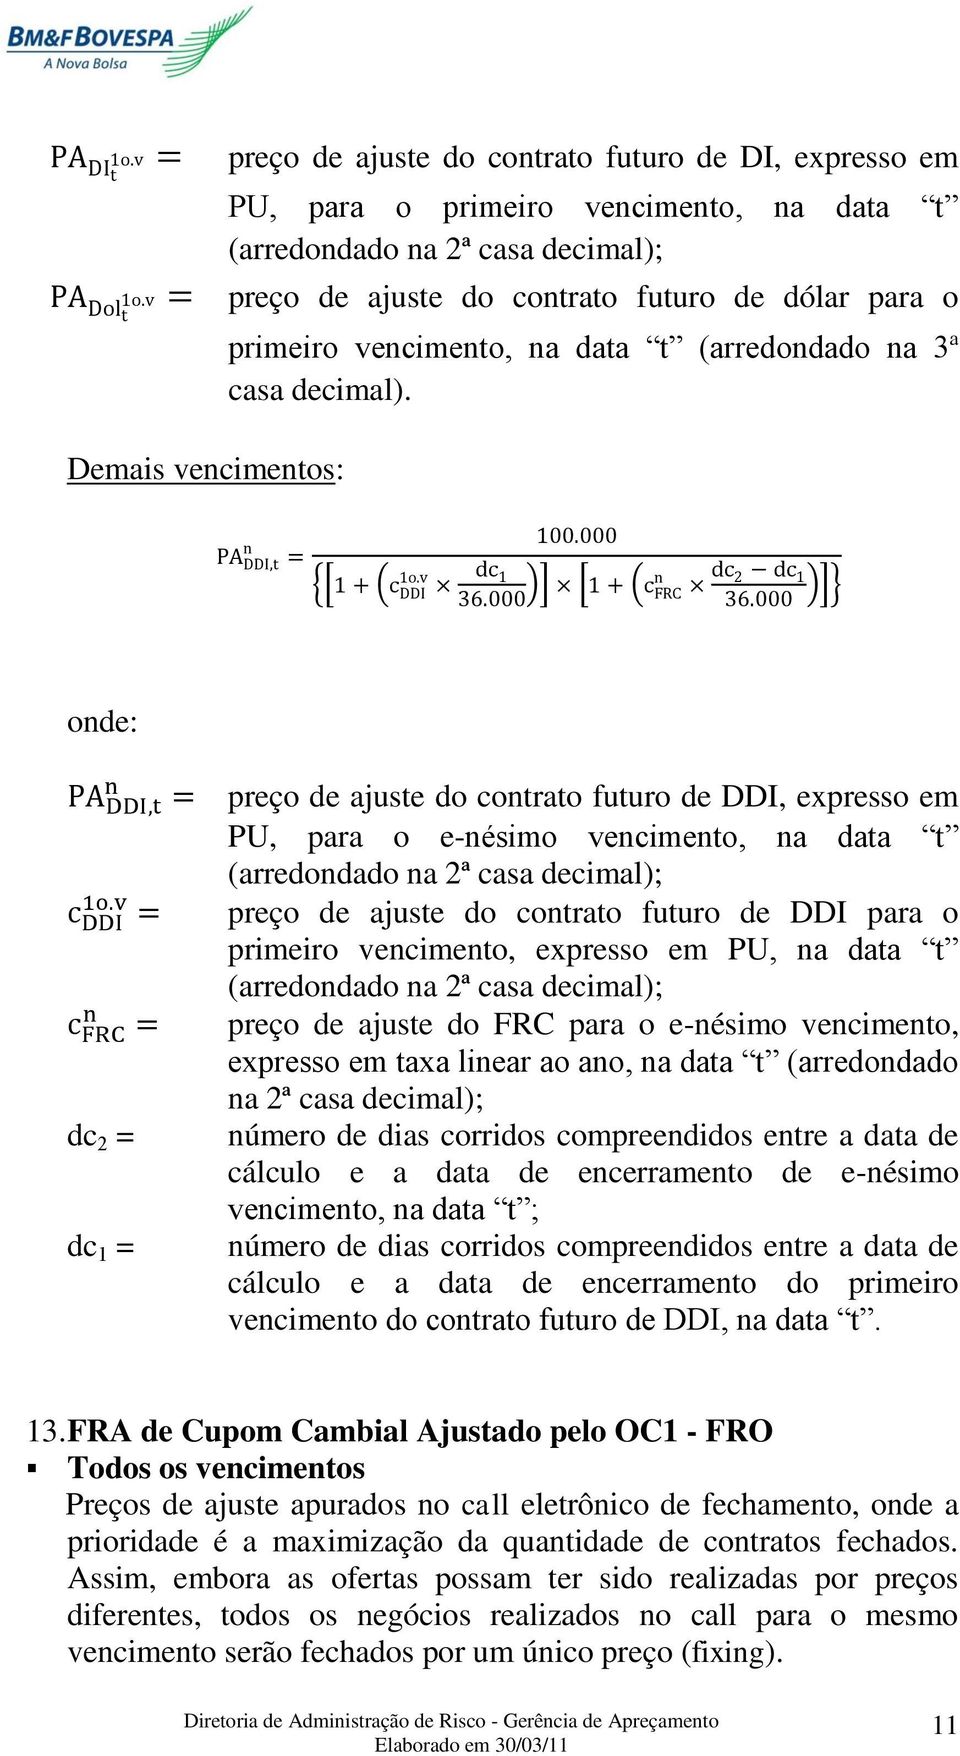 {[ ] [ ]} dc 2 = dc 1 = preço de ajuste do contrato futuro de DDI, expresso em PU, para o e-nésimo vencimento, na data t (arredondado na 2ª casa decimal); preço de ajuste do contrato futuro de DDI